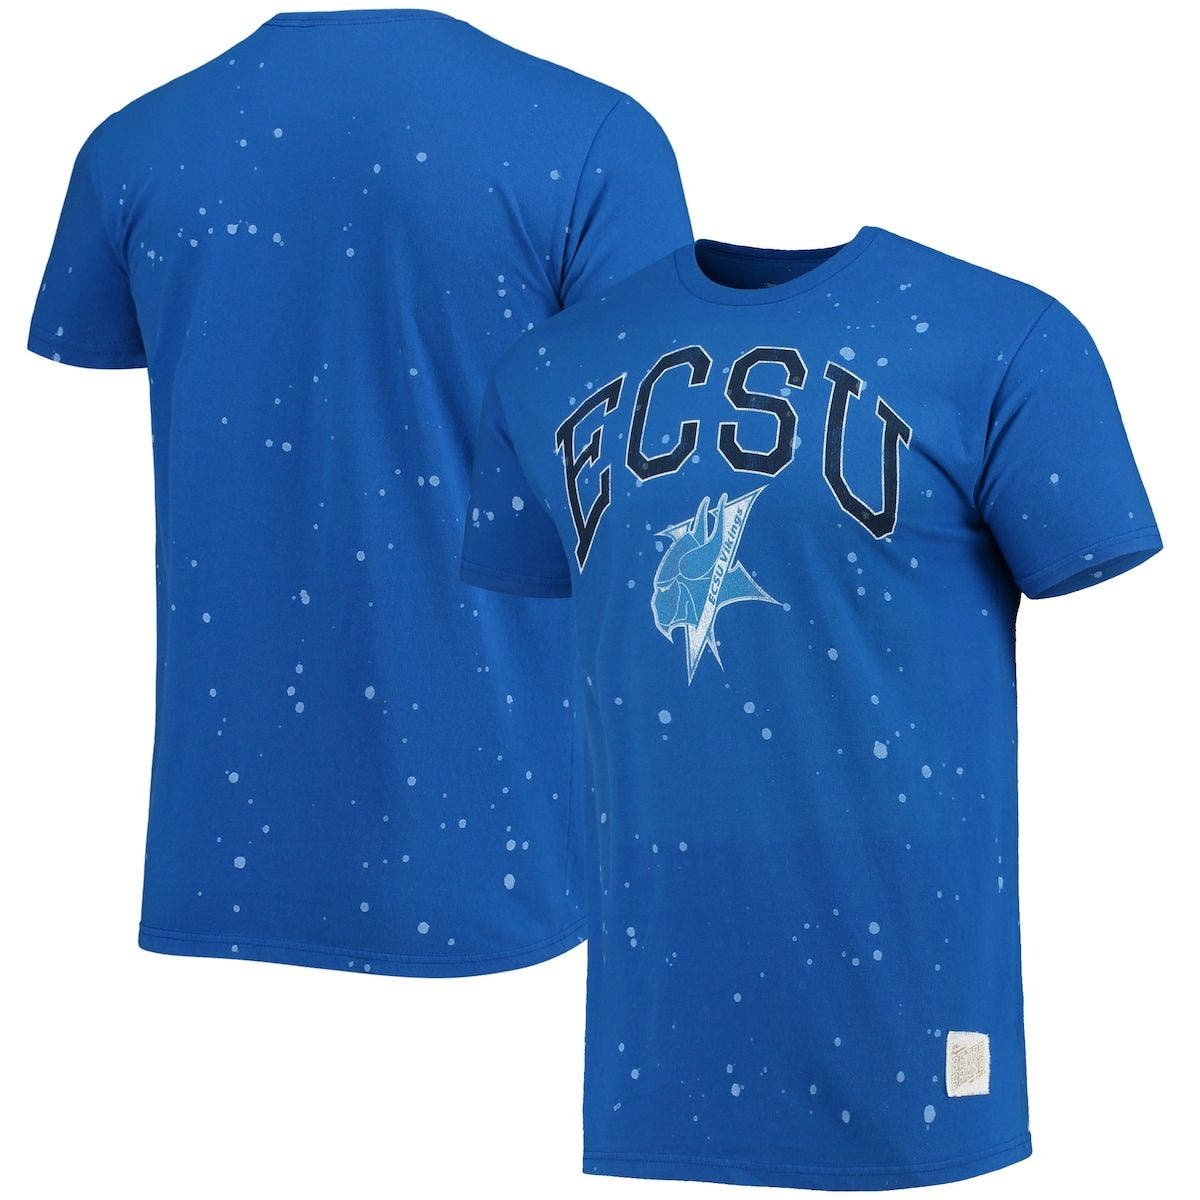 Original Retro Brand Adult College Team Color T-Shirt 